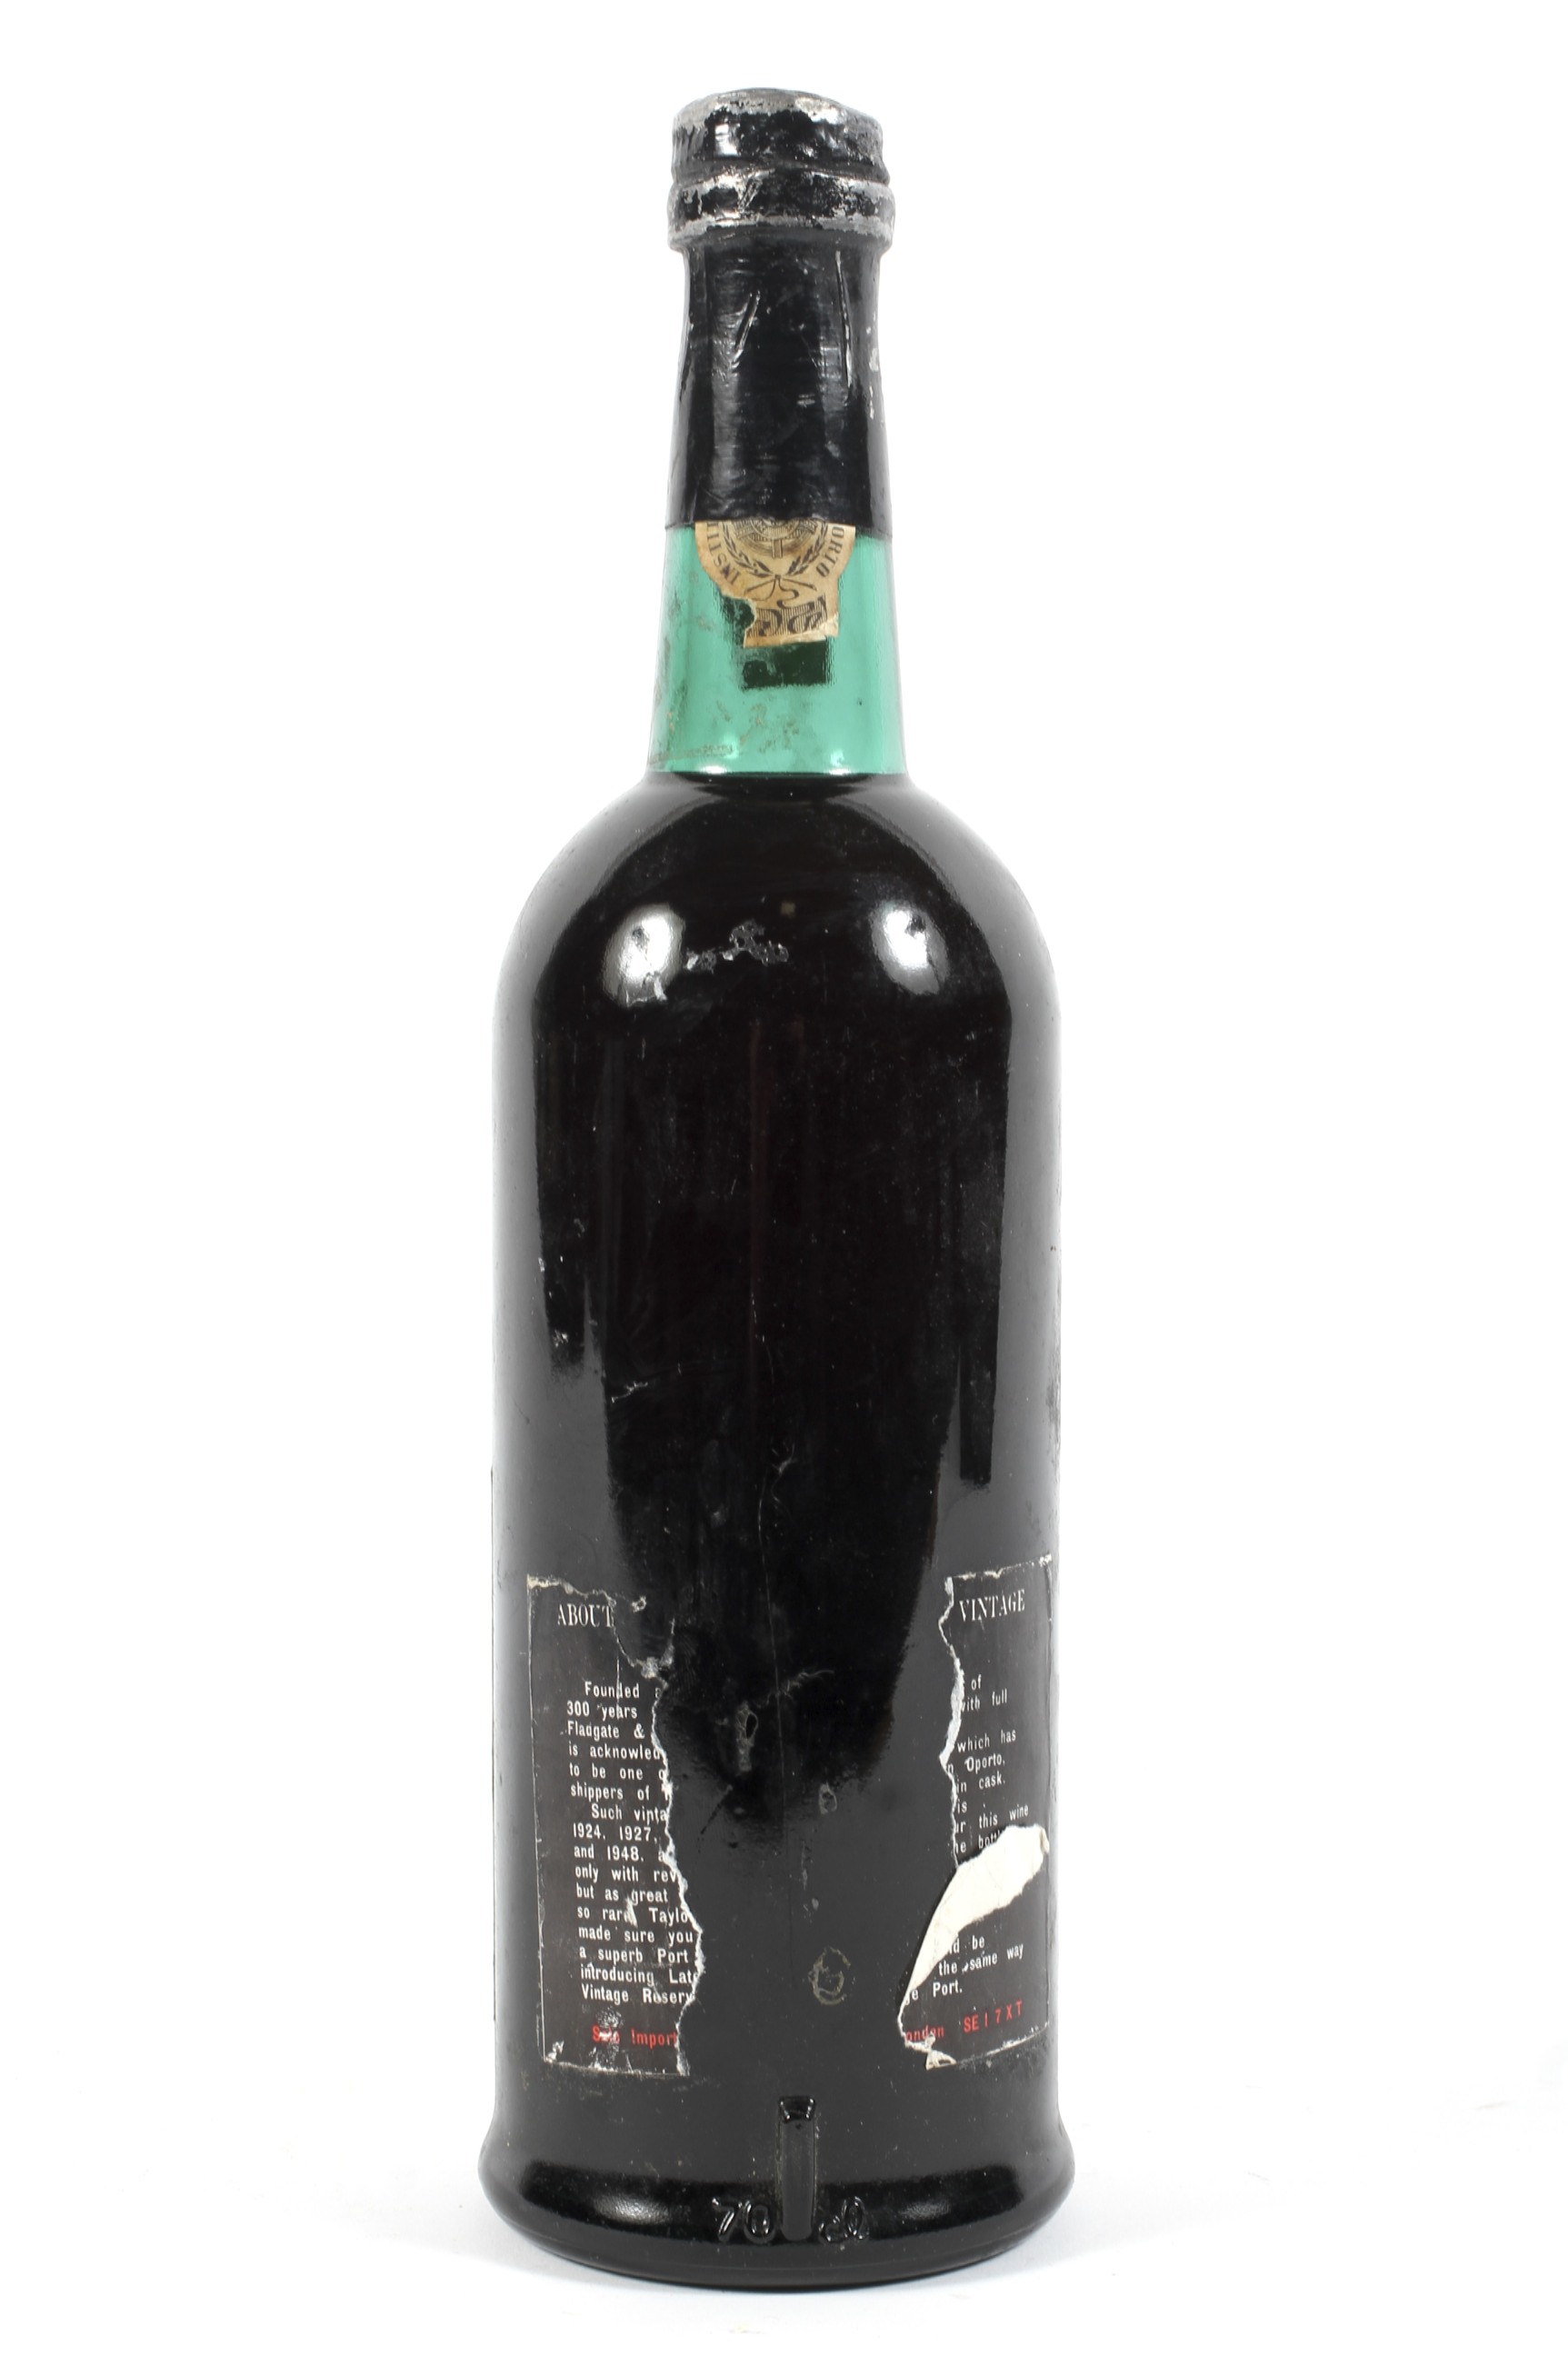 A bottle of Taylors late bottled vintage reserve Port, 1972, - Image 2 of 2